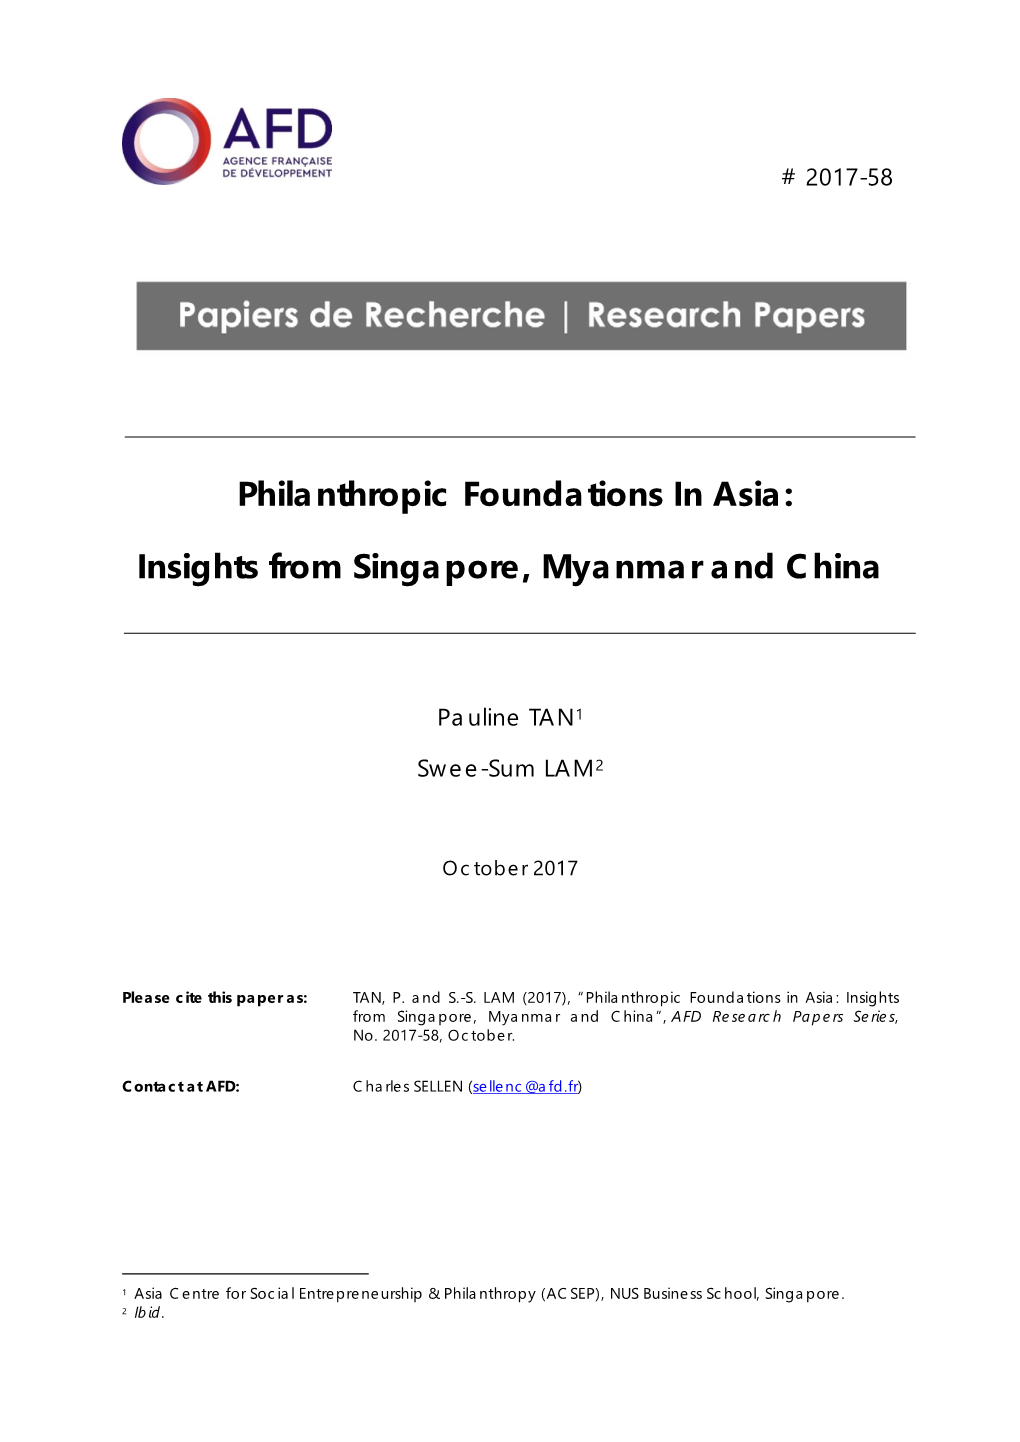 Philanthropic Foundations in Asia